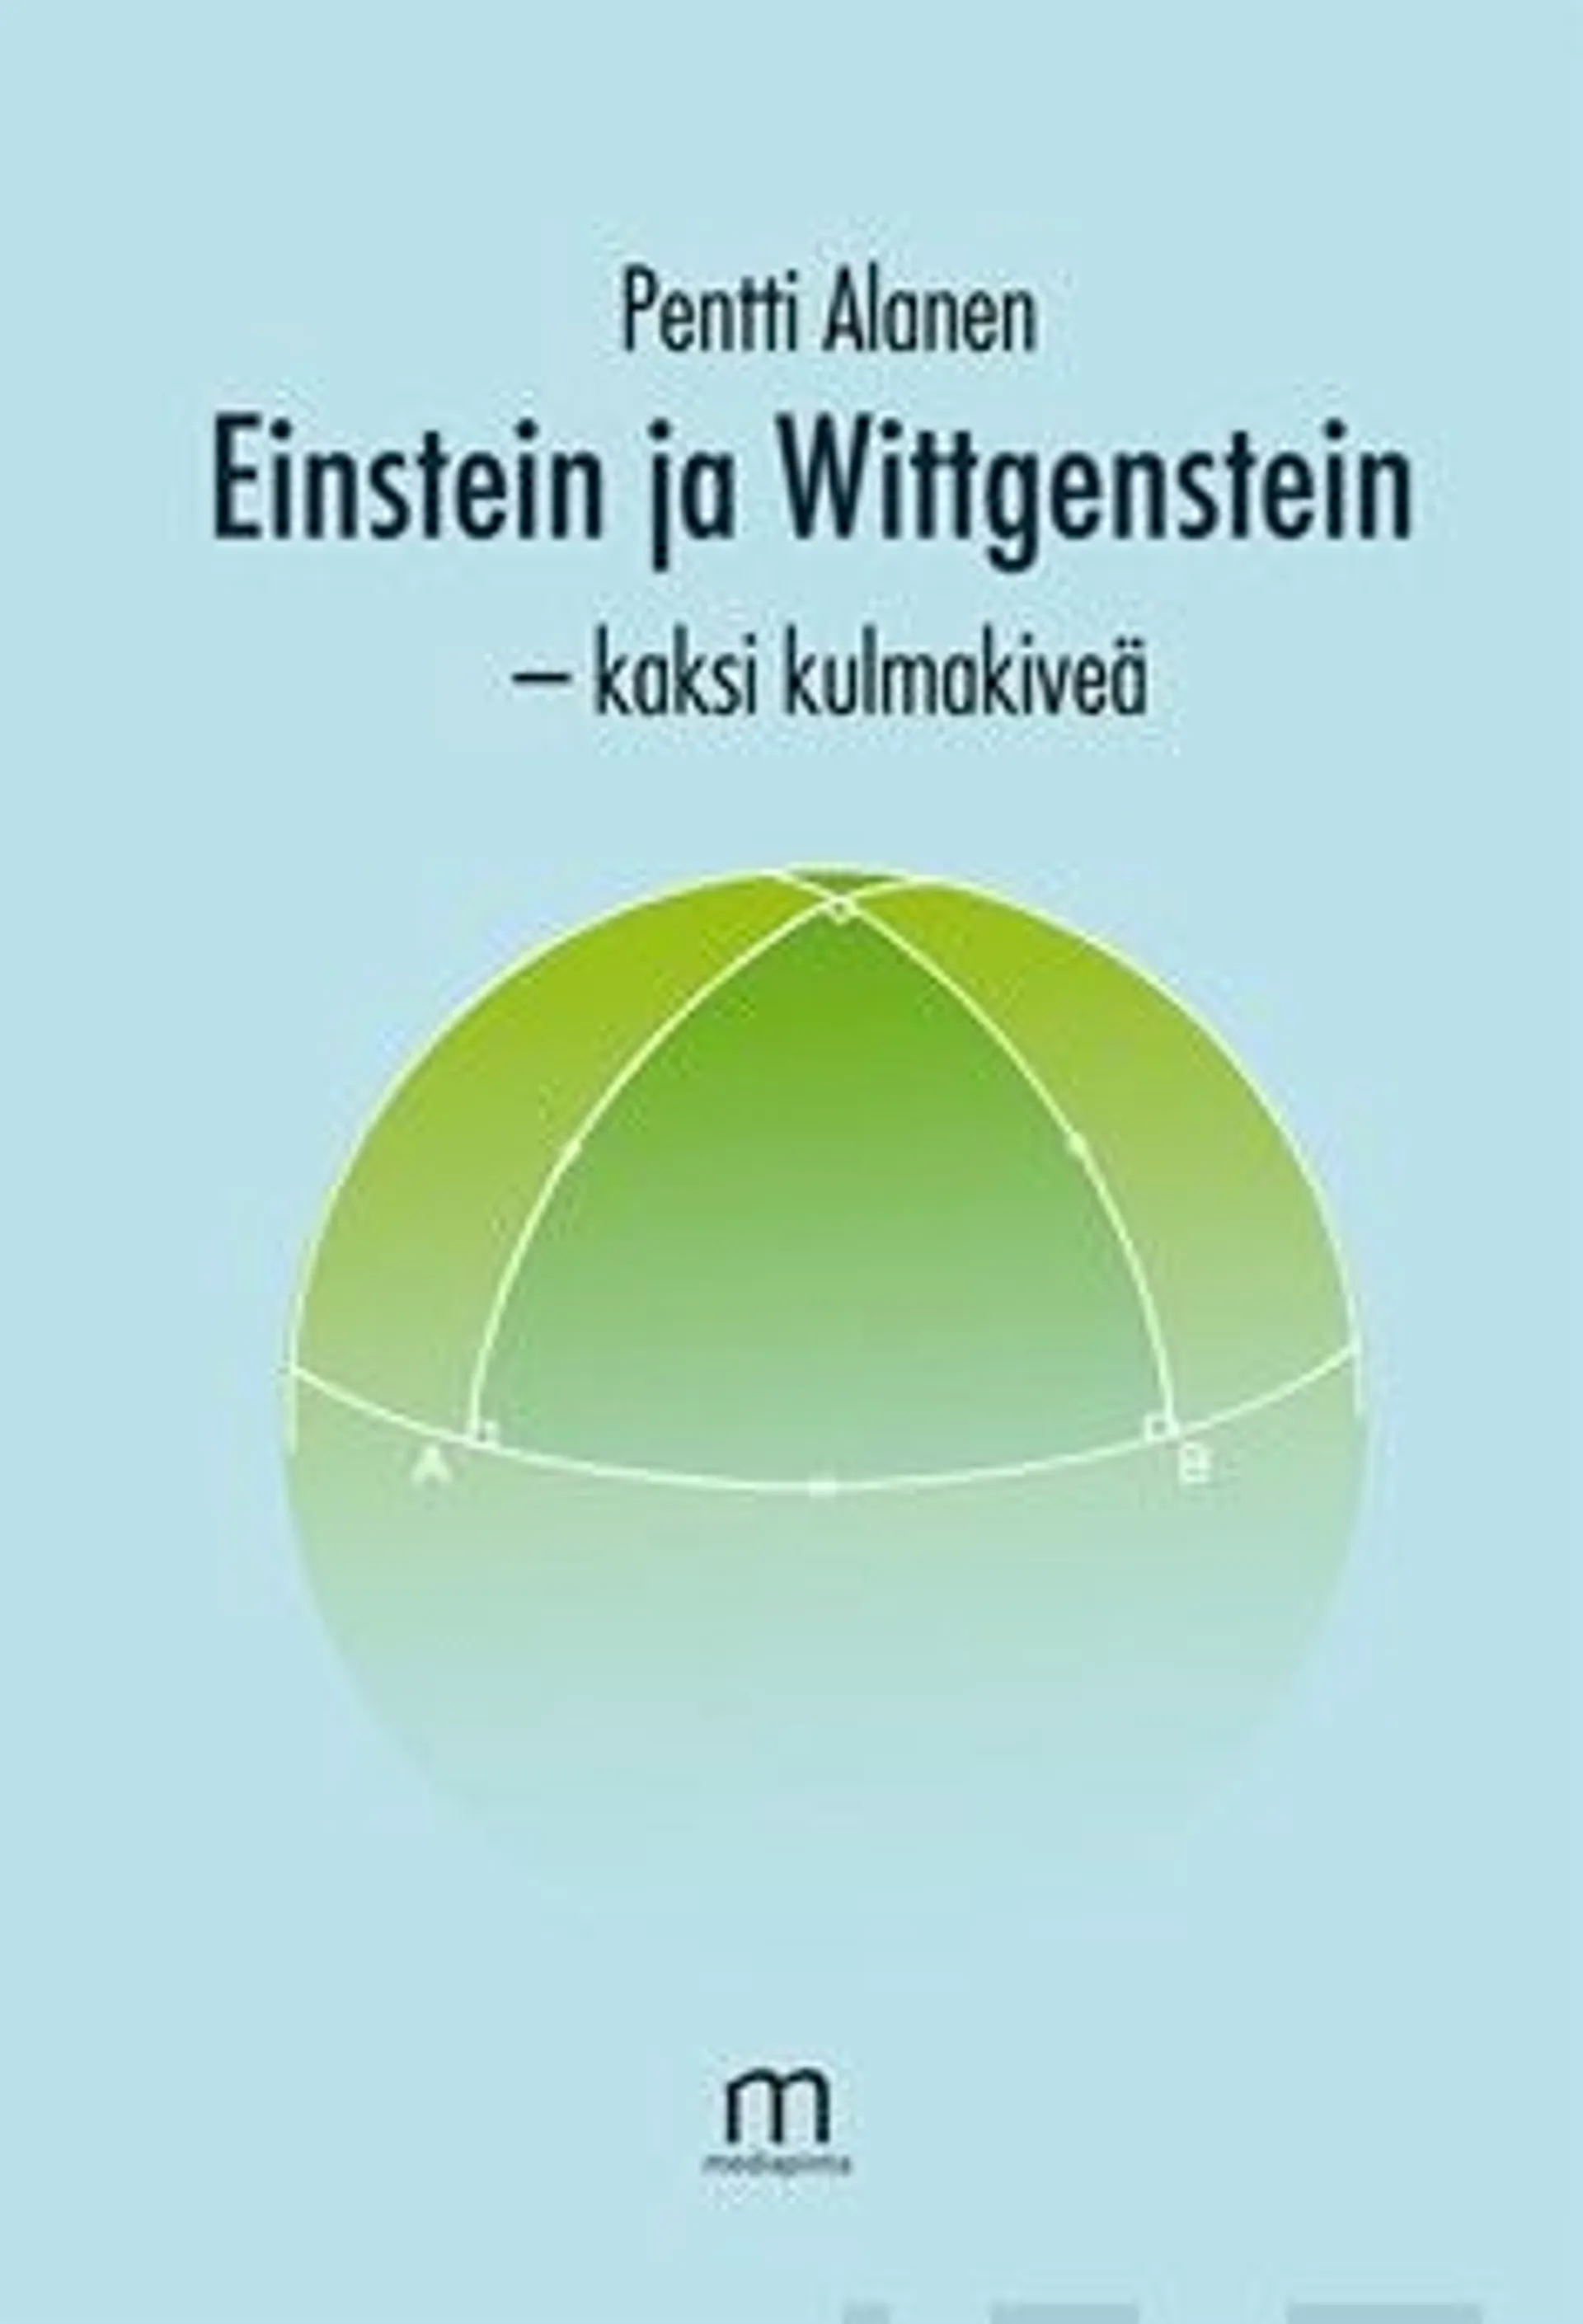 Alanen, Einstein ja Wittgenstein, kaksi kulmakiveä